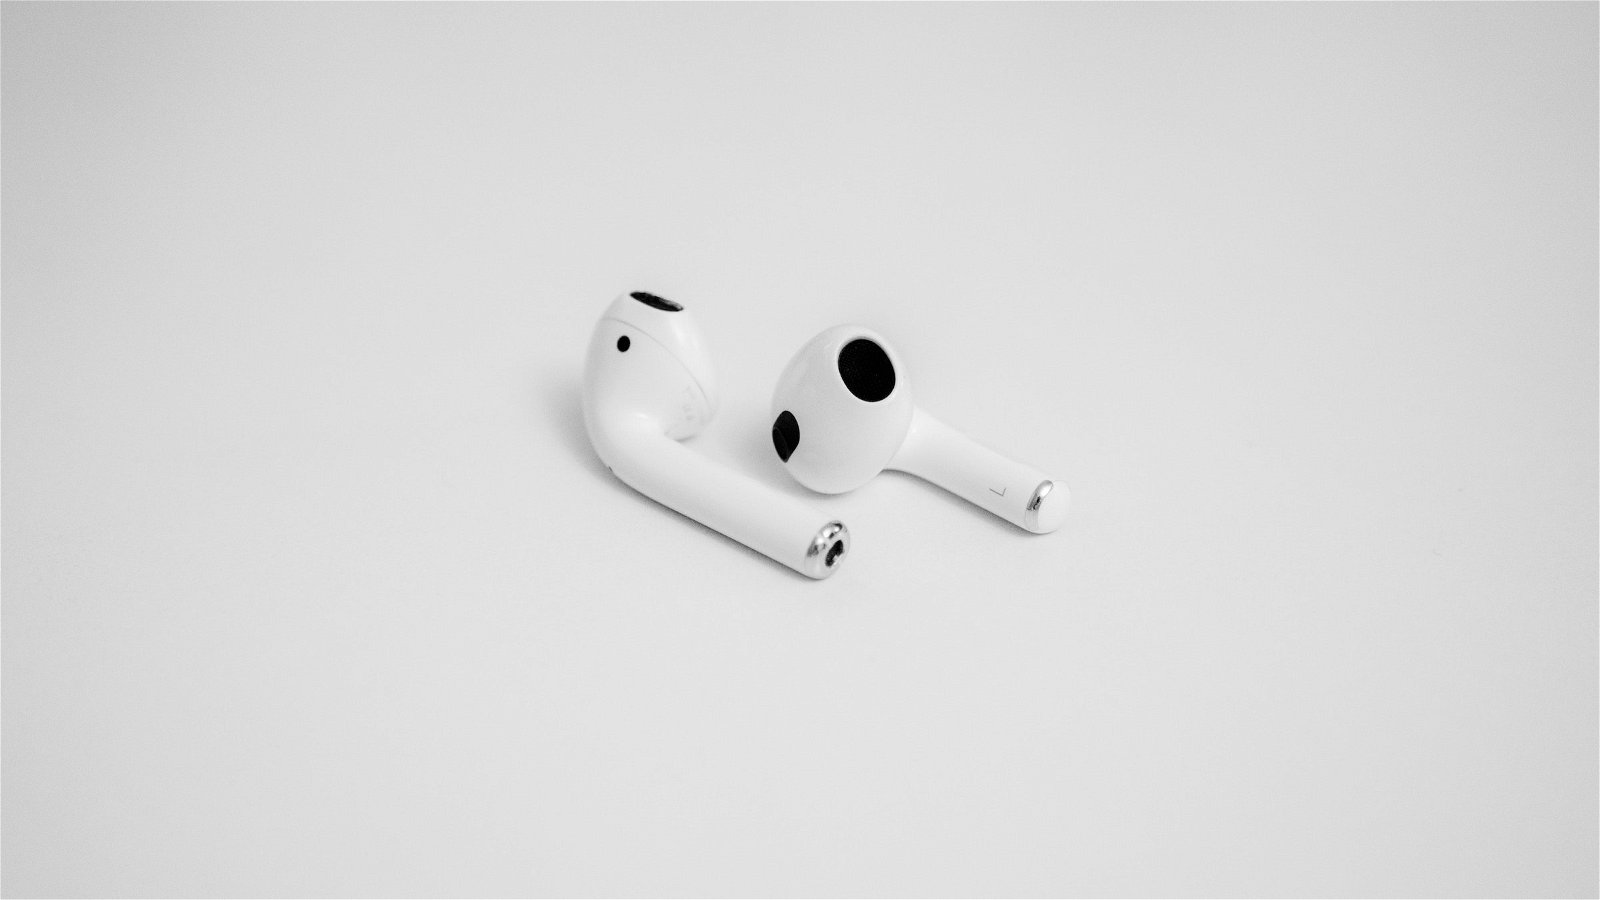 Los Airpods más económicos ahora son más baratos: llévate los auriculares  Bluetooth de Apple con esta súper oferta